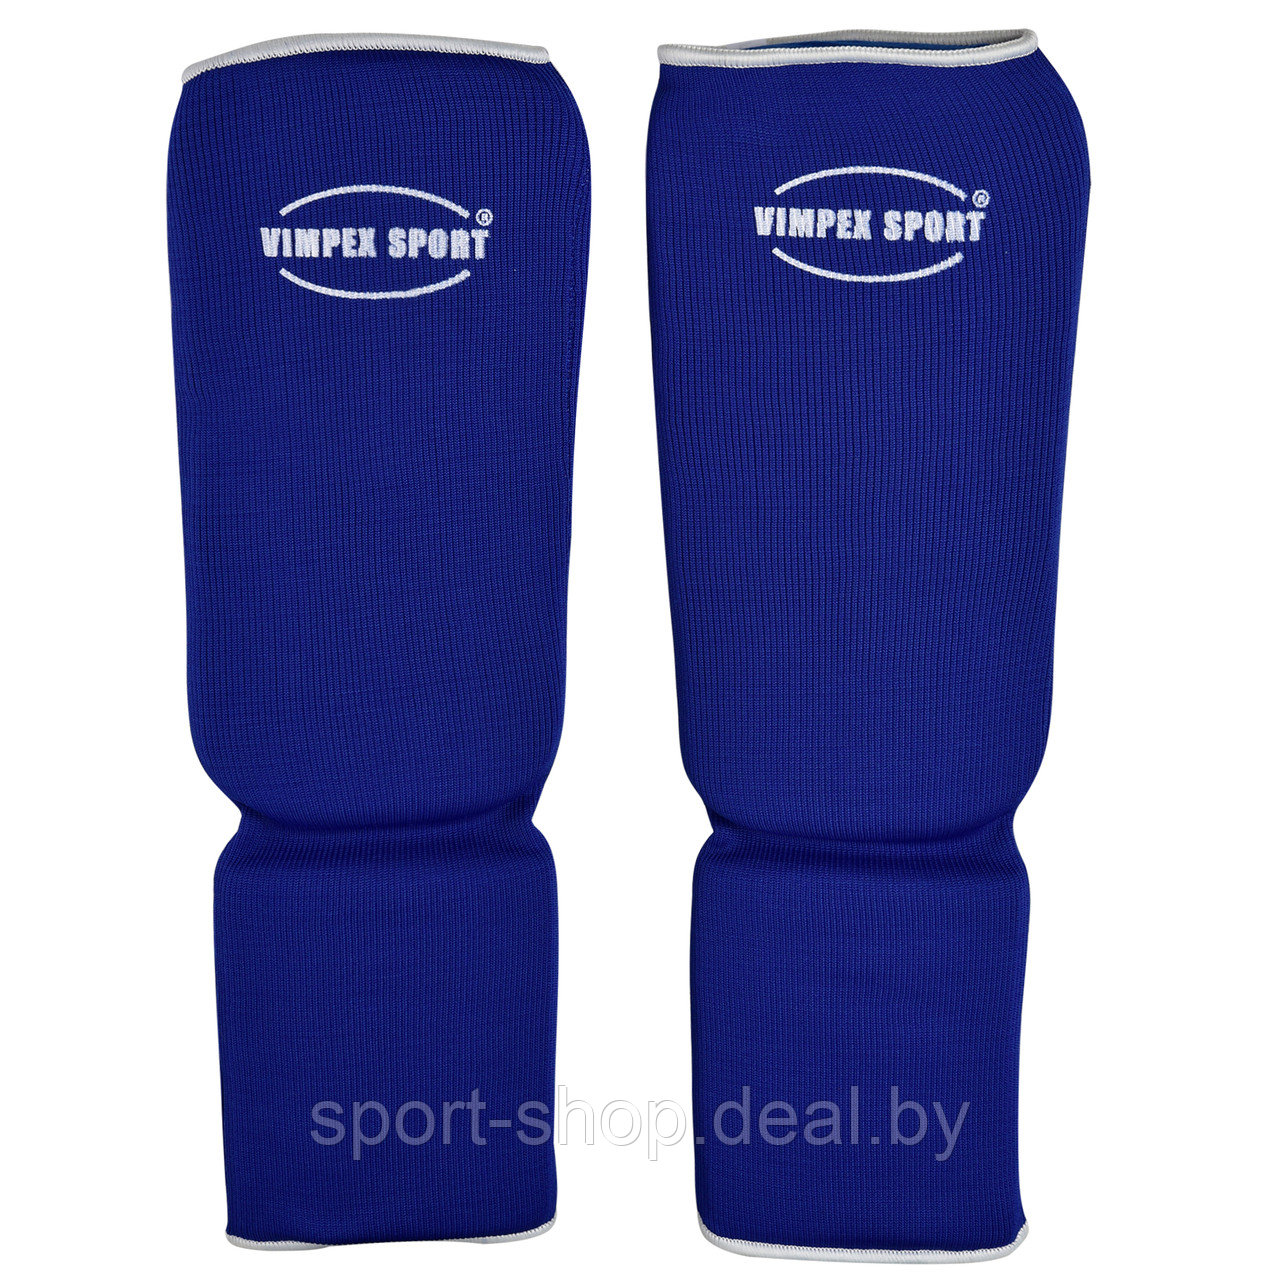 Защита ног Синяя Vimpex Sport 2730 — Размер S, защита голени, защита голеностопа, защита для ног